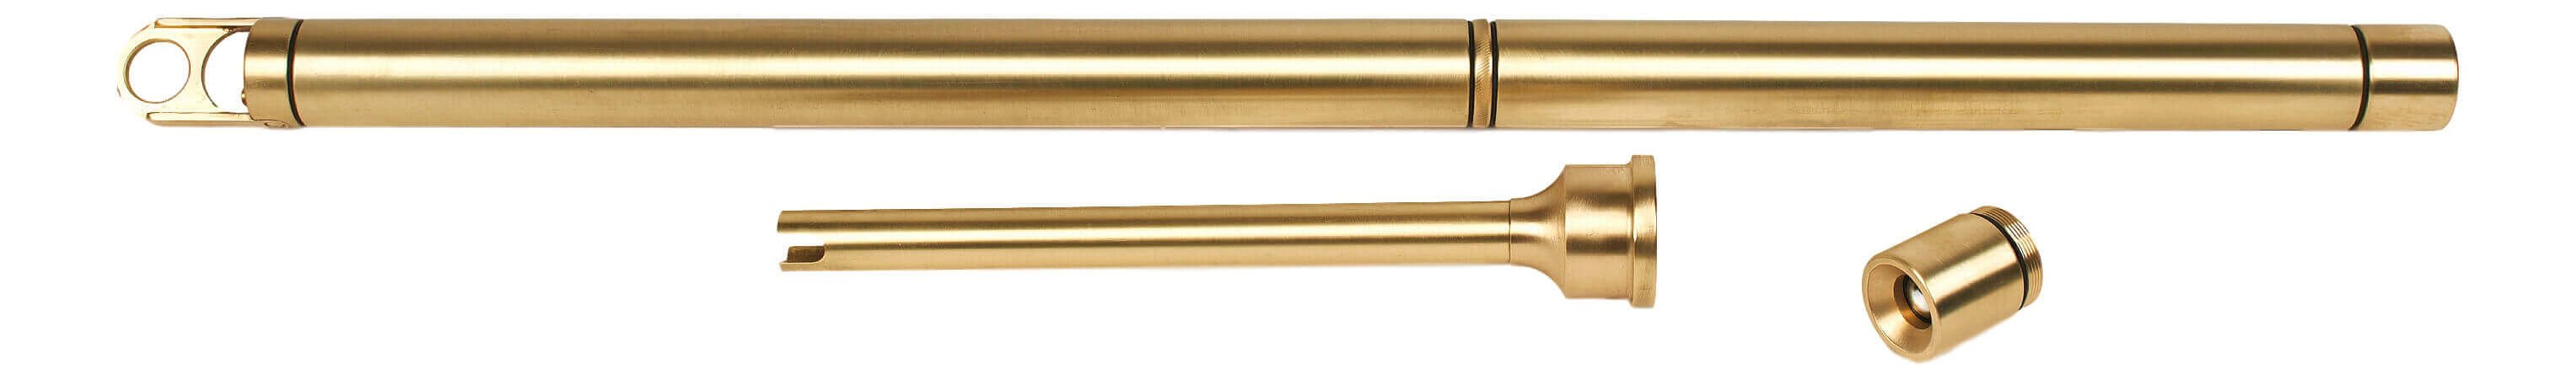 27668-000 Multi-Function Sampler, Brass